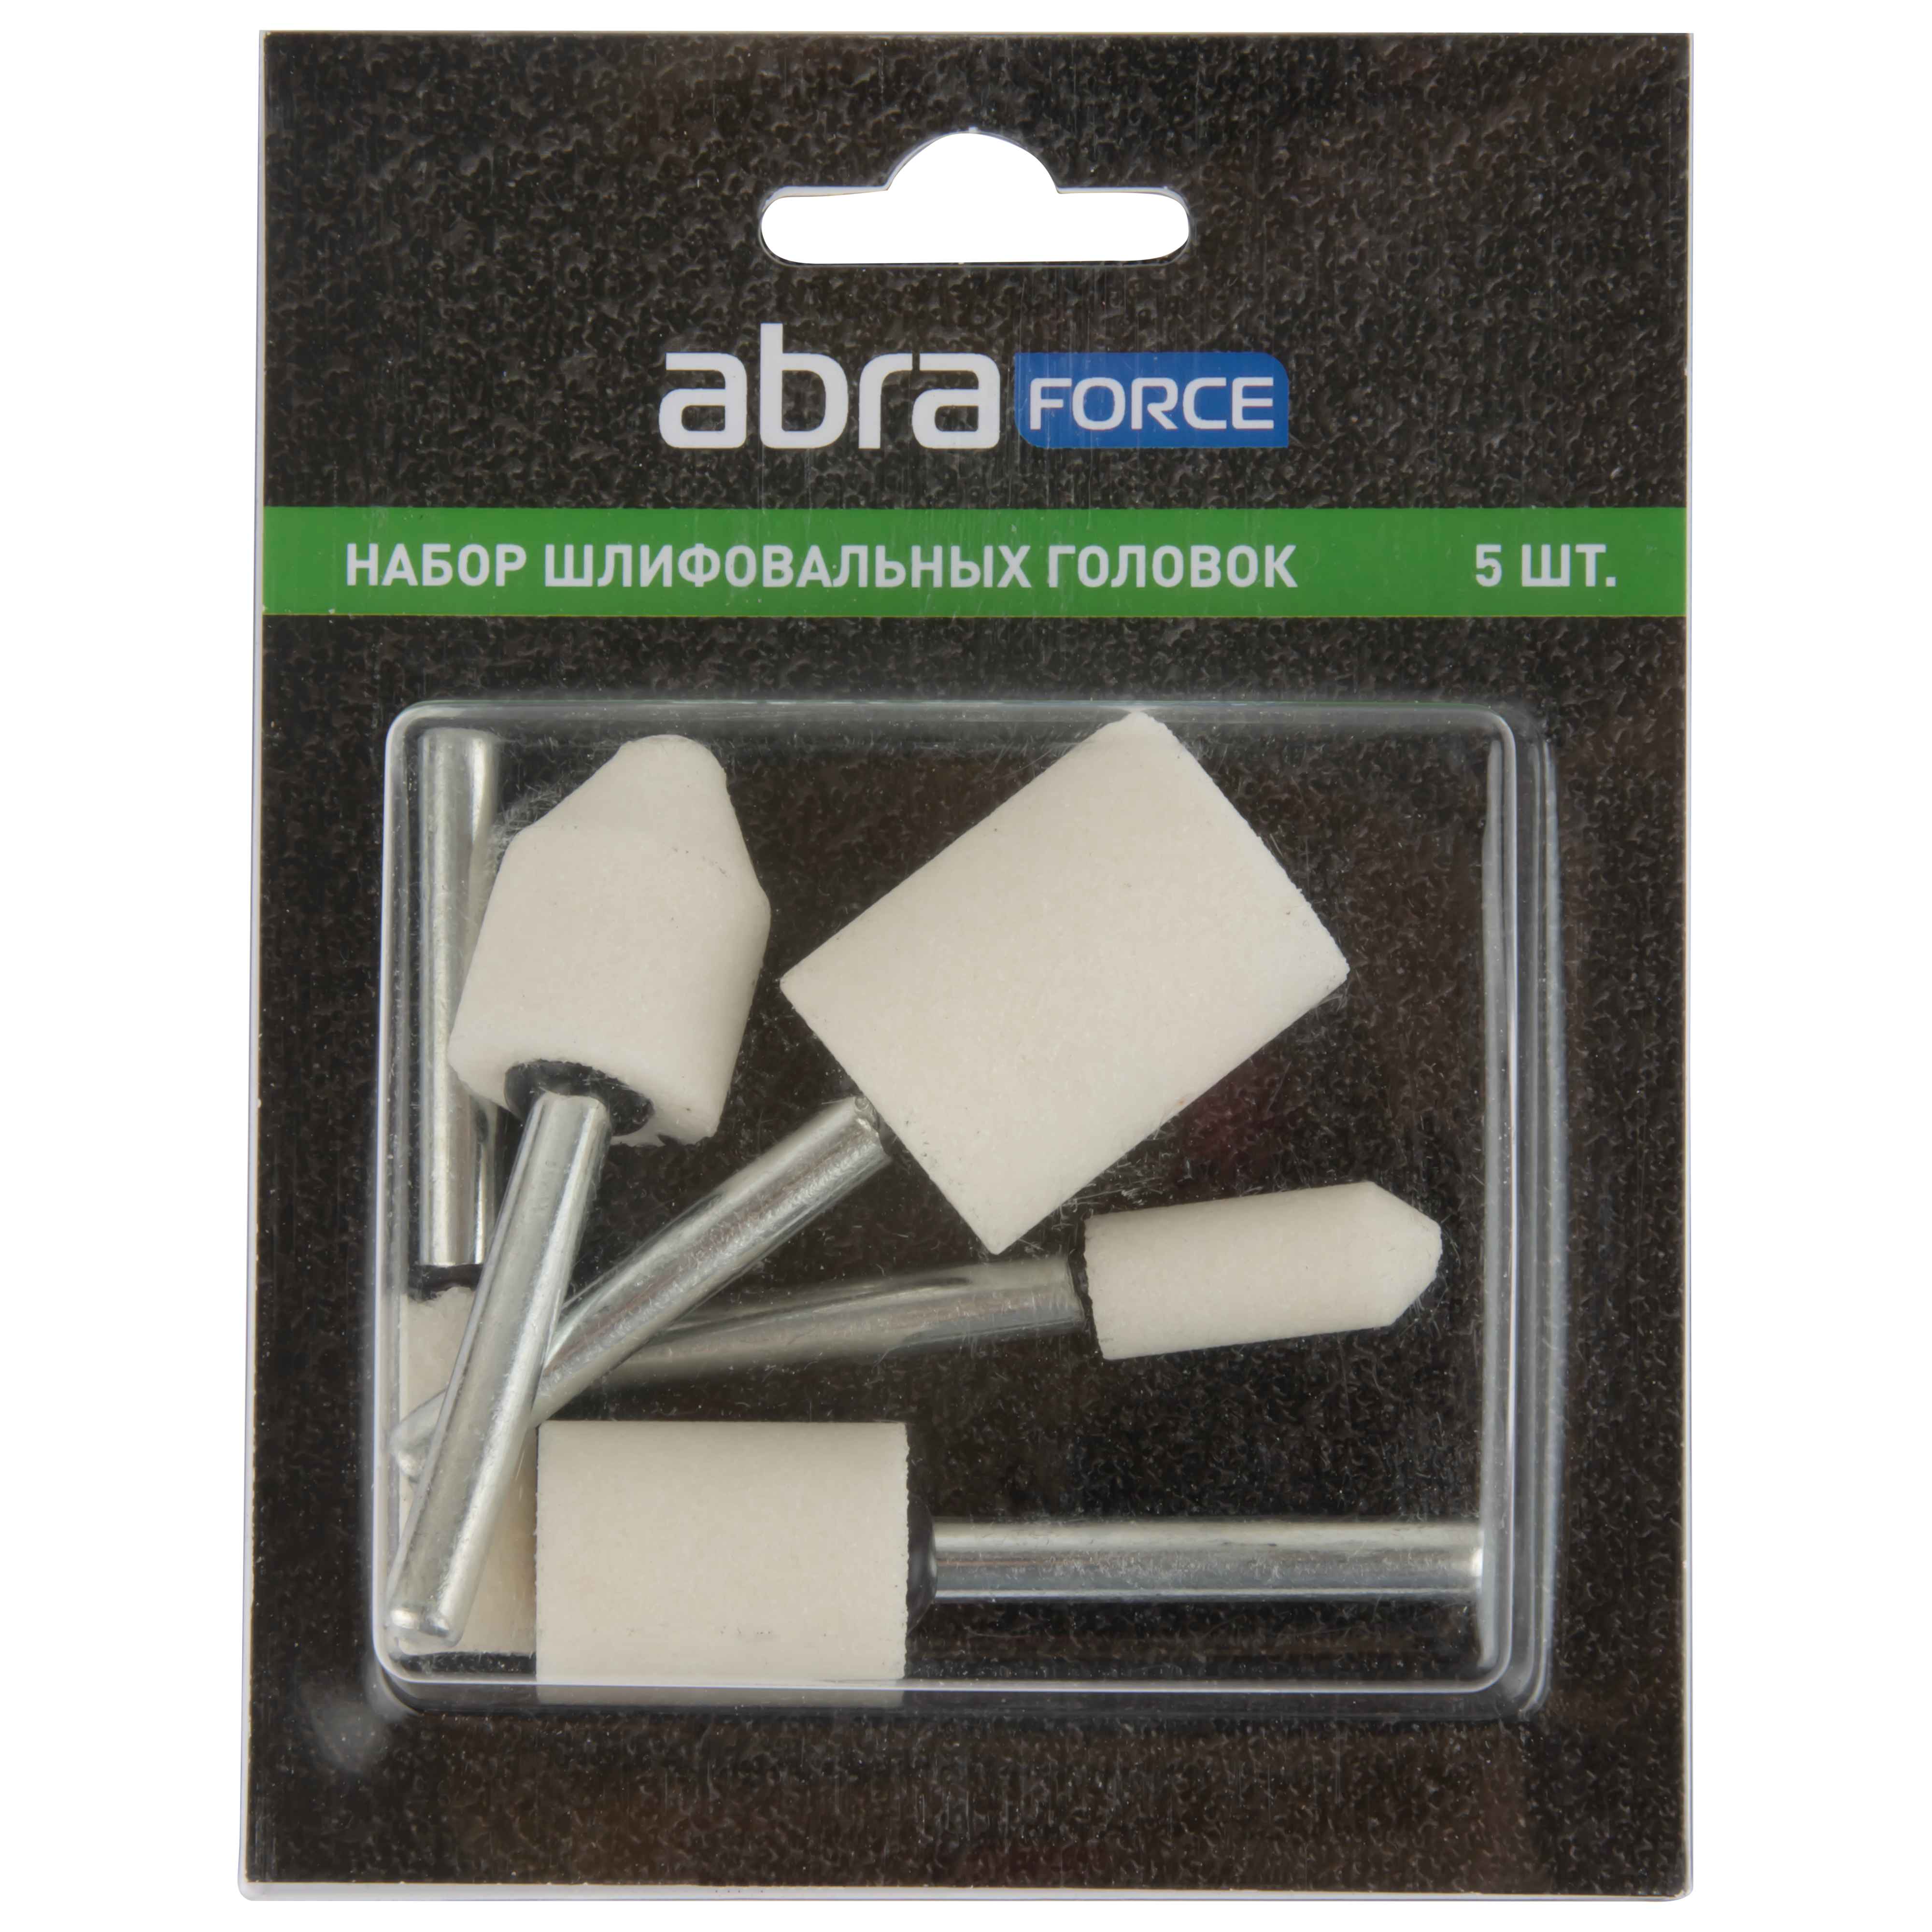 Набор шлифовальных головок ABRAforce, белый электрокорунд P60, 5 штук. набор фрез для удаления сварных точек kt tools